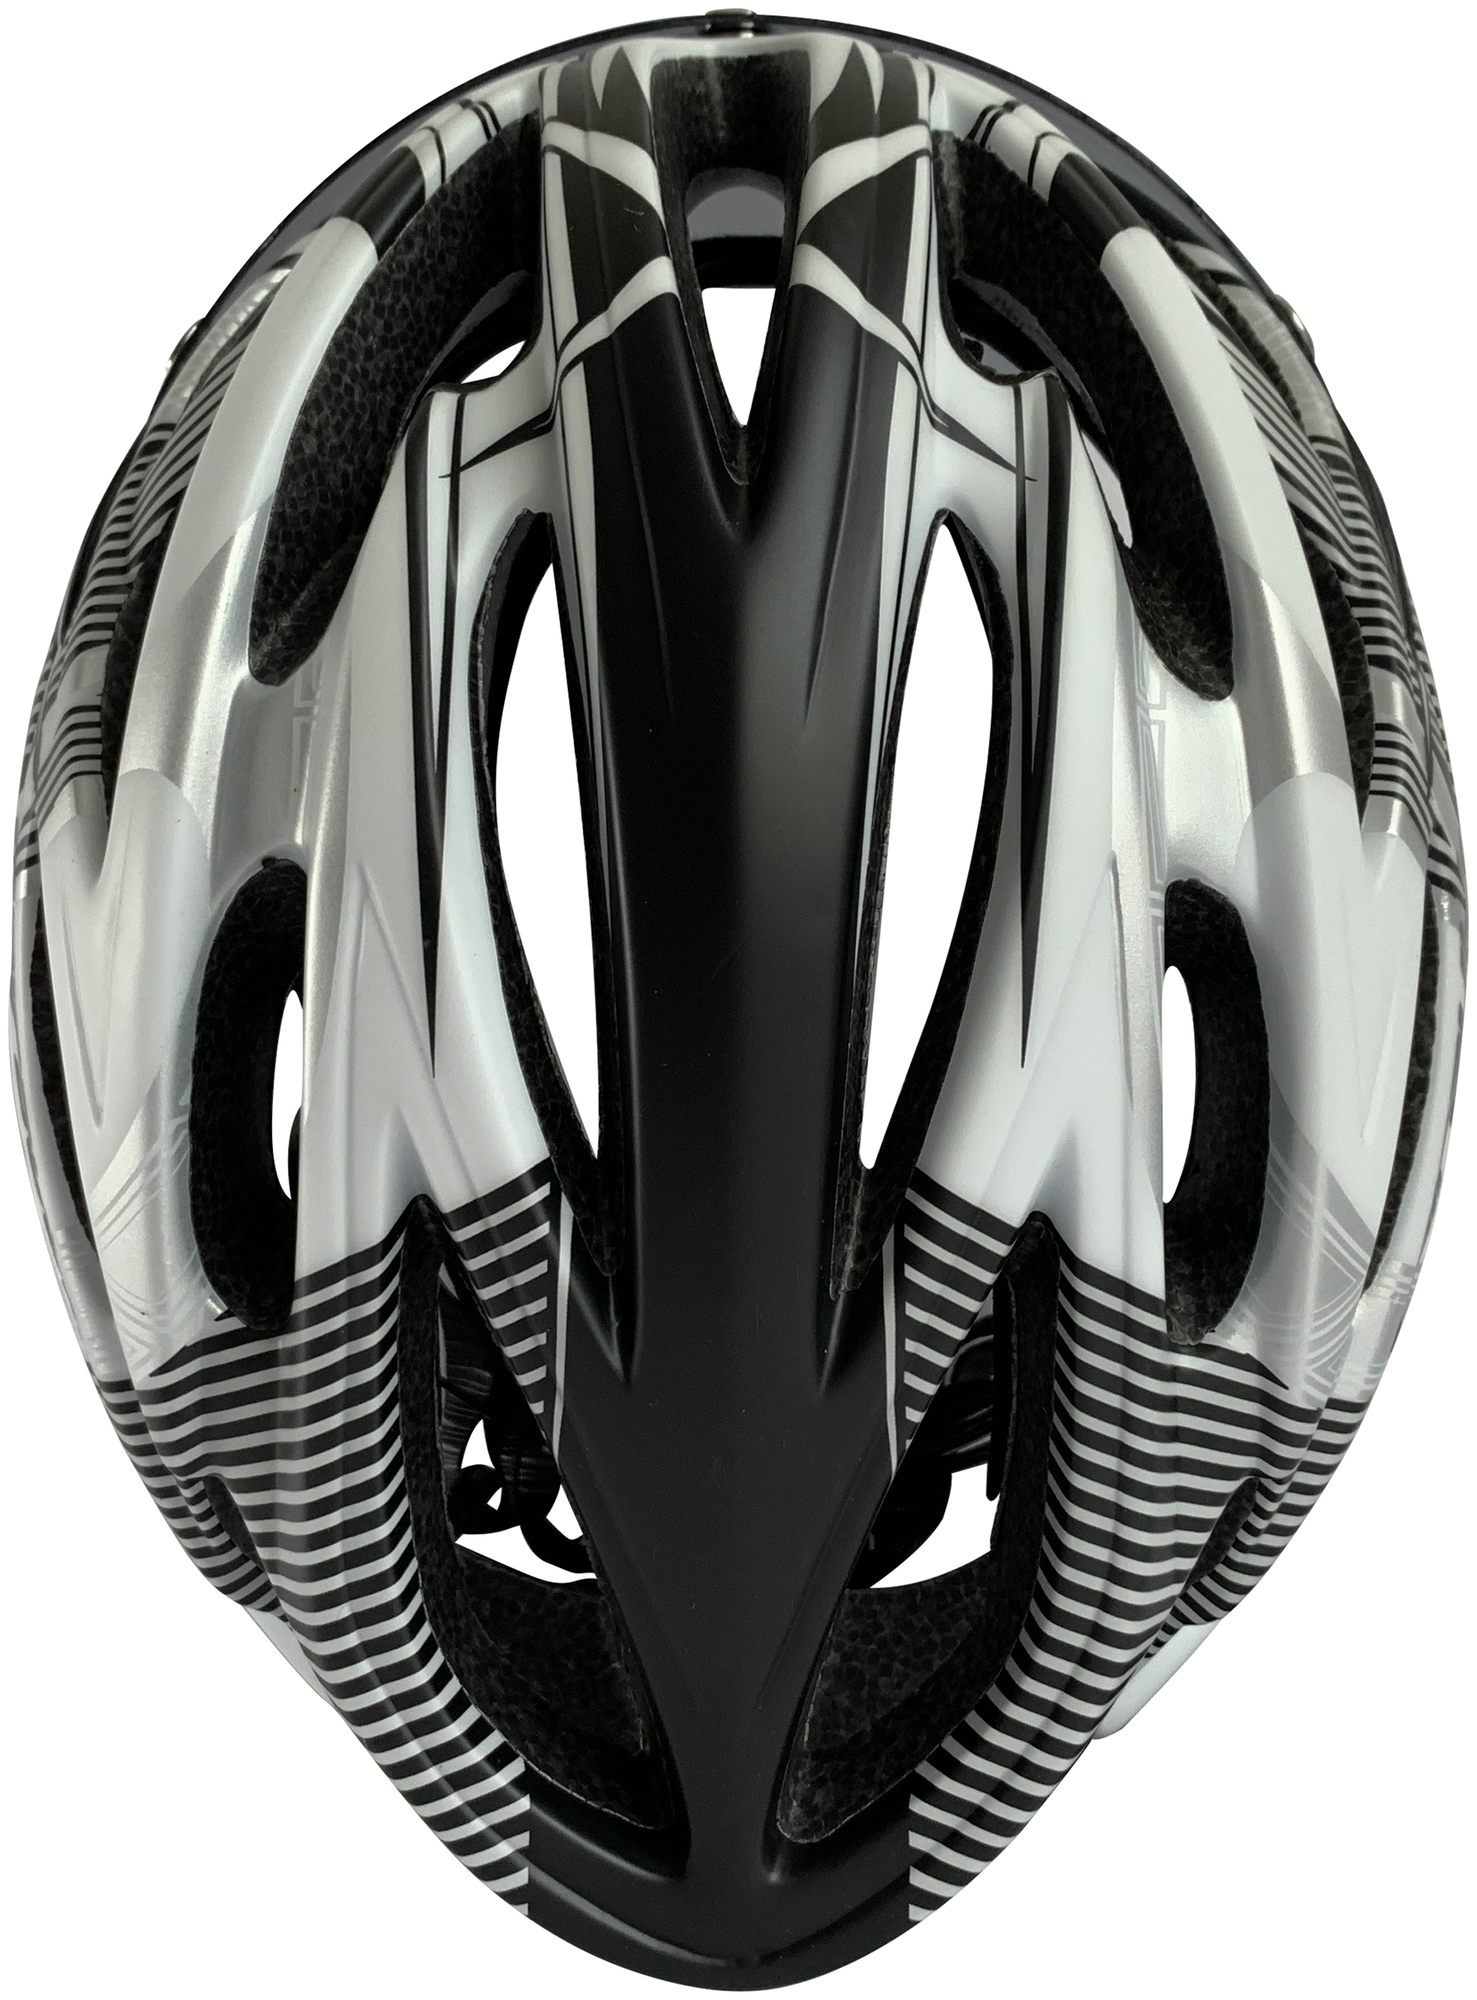 Шлем велосипедный со съемным визором (размер M/L 54-61 см, цвет черно-белый)